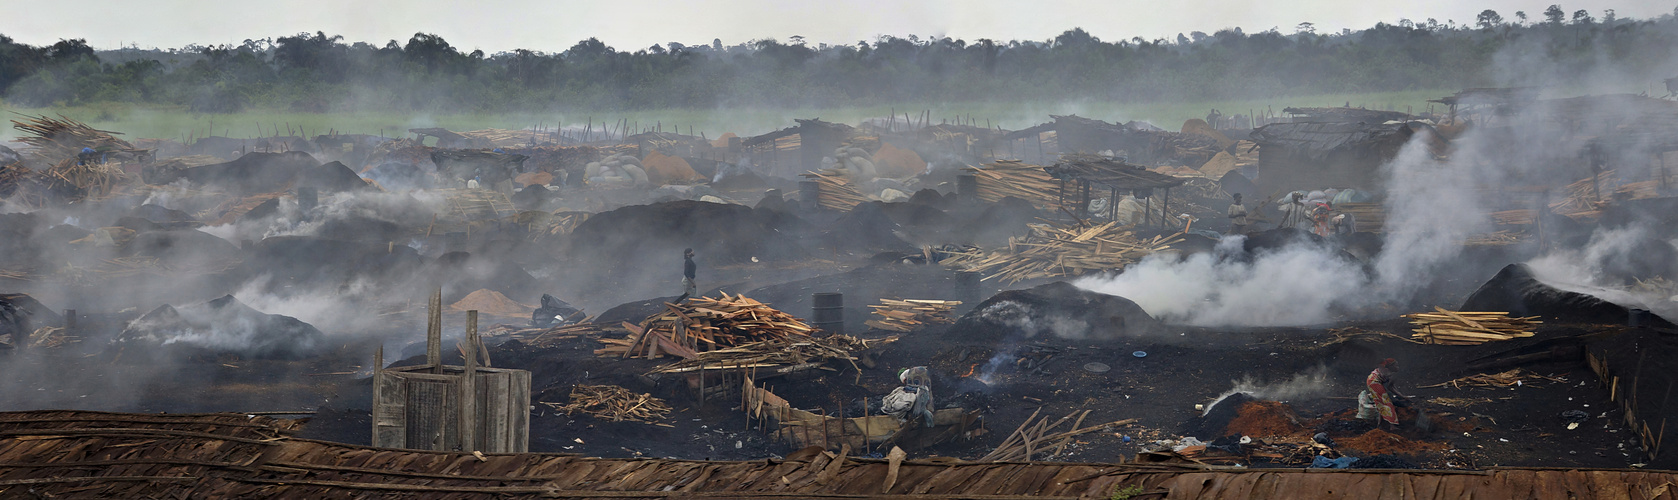 Holzkohlenproduktion in der Elfenbeinküste